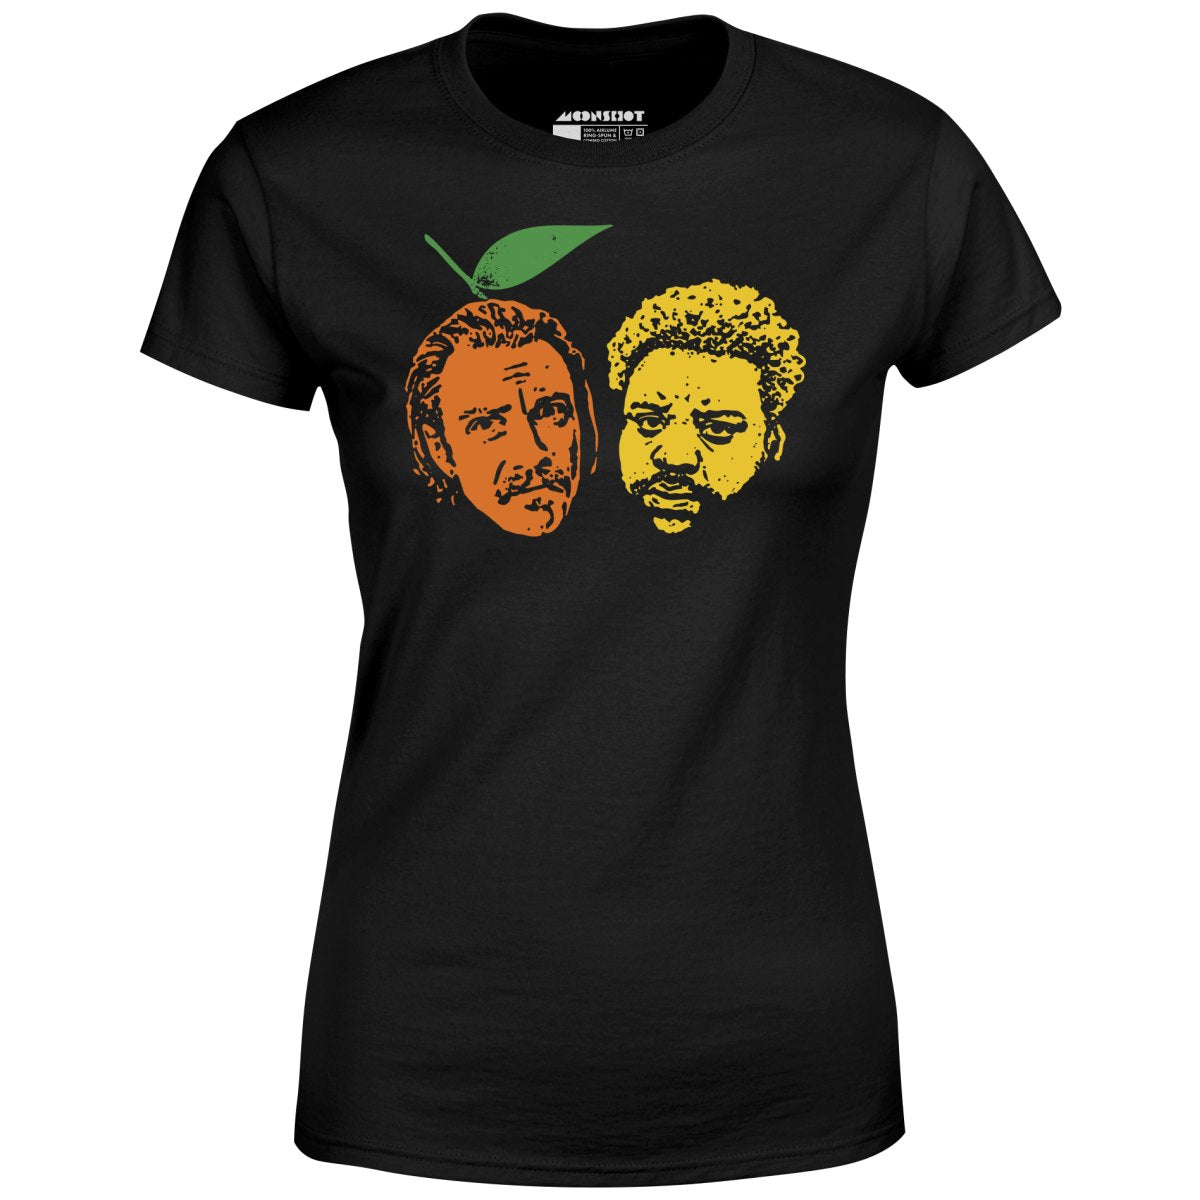 Tangerine & Lemon - Women's T-Shirt